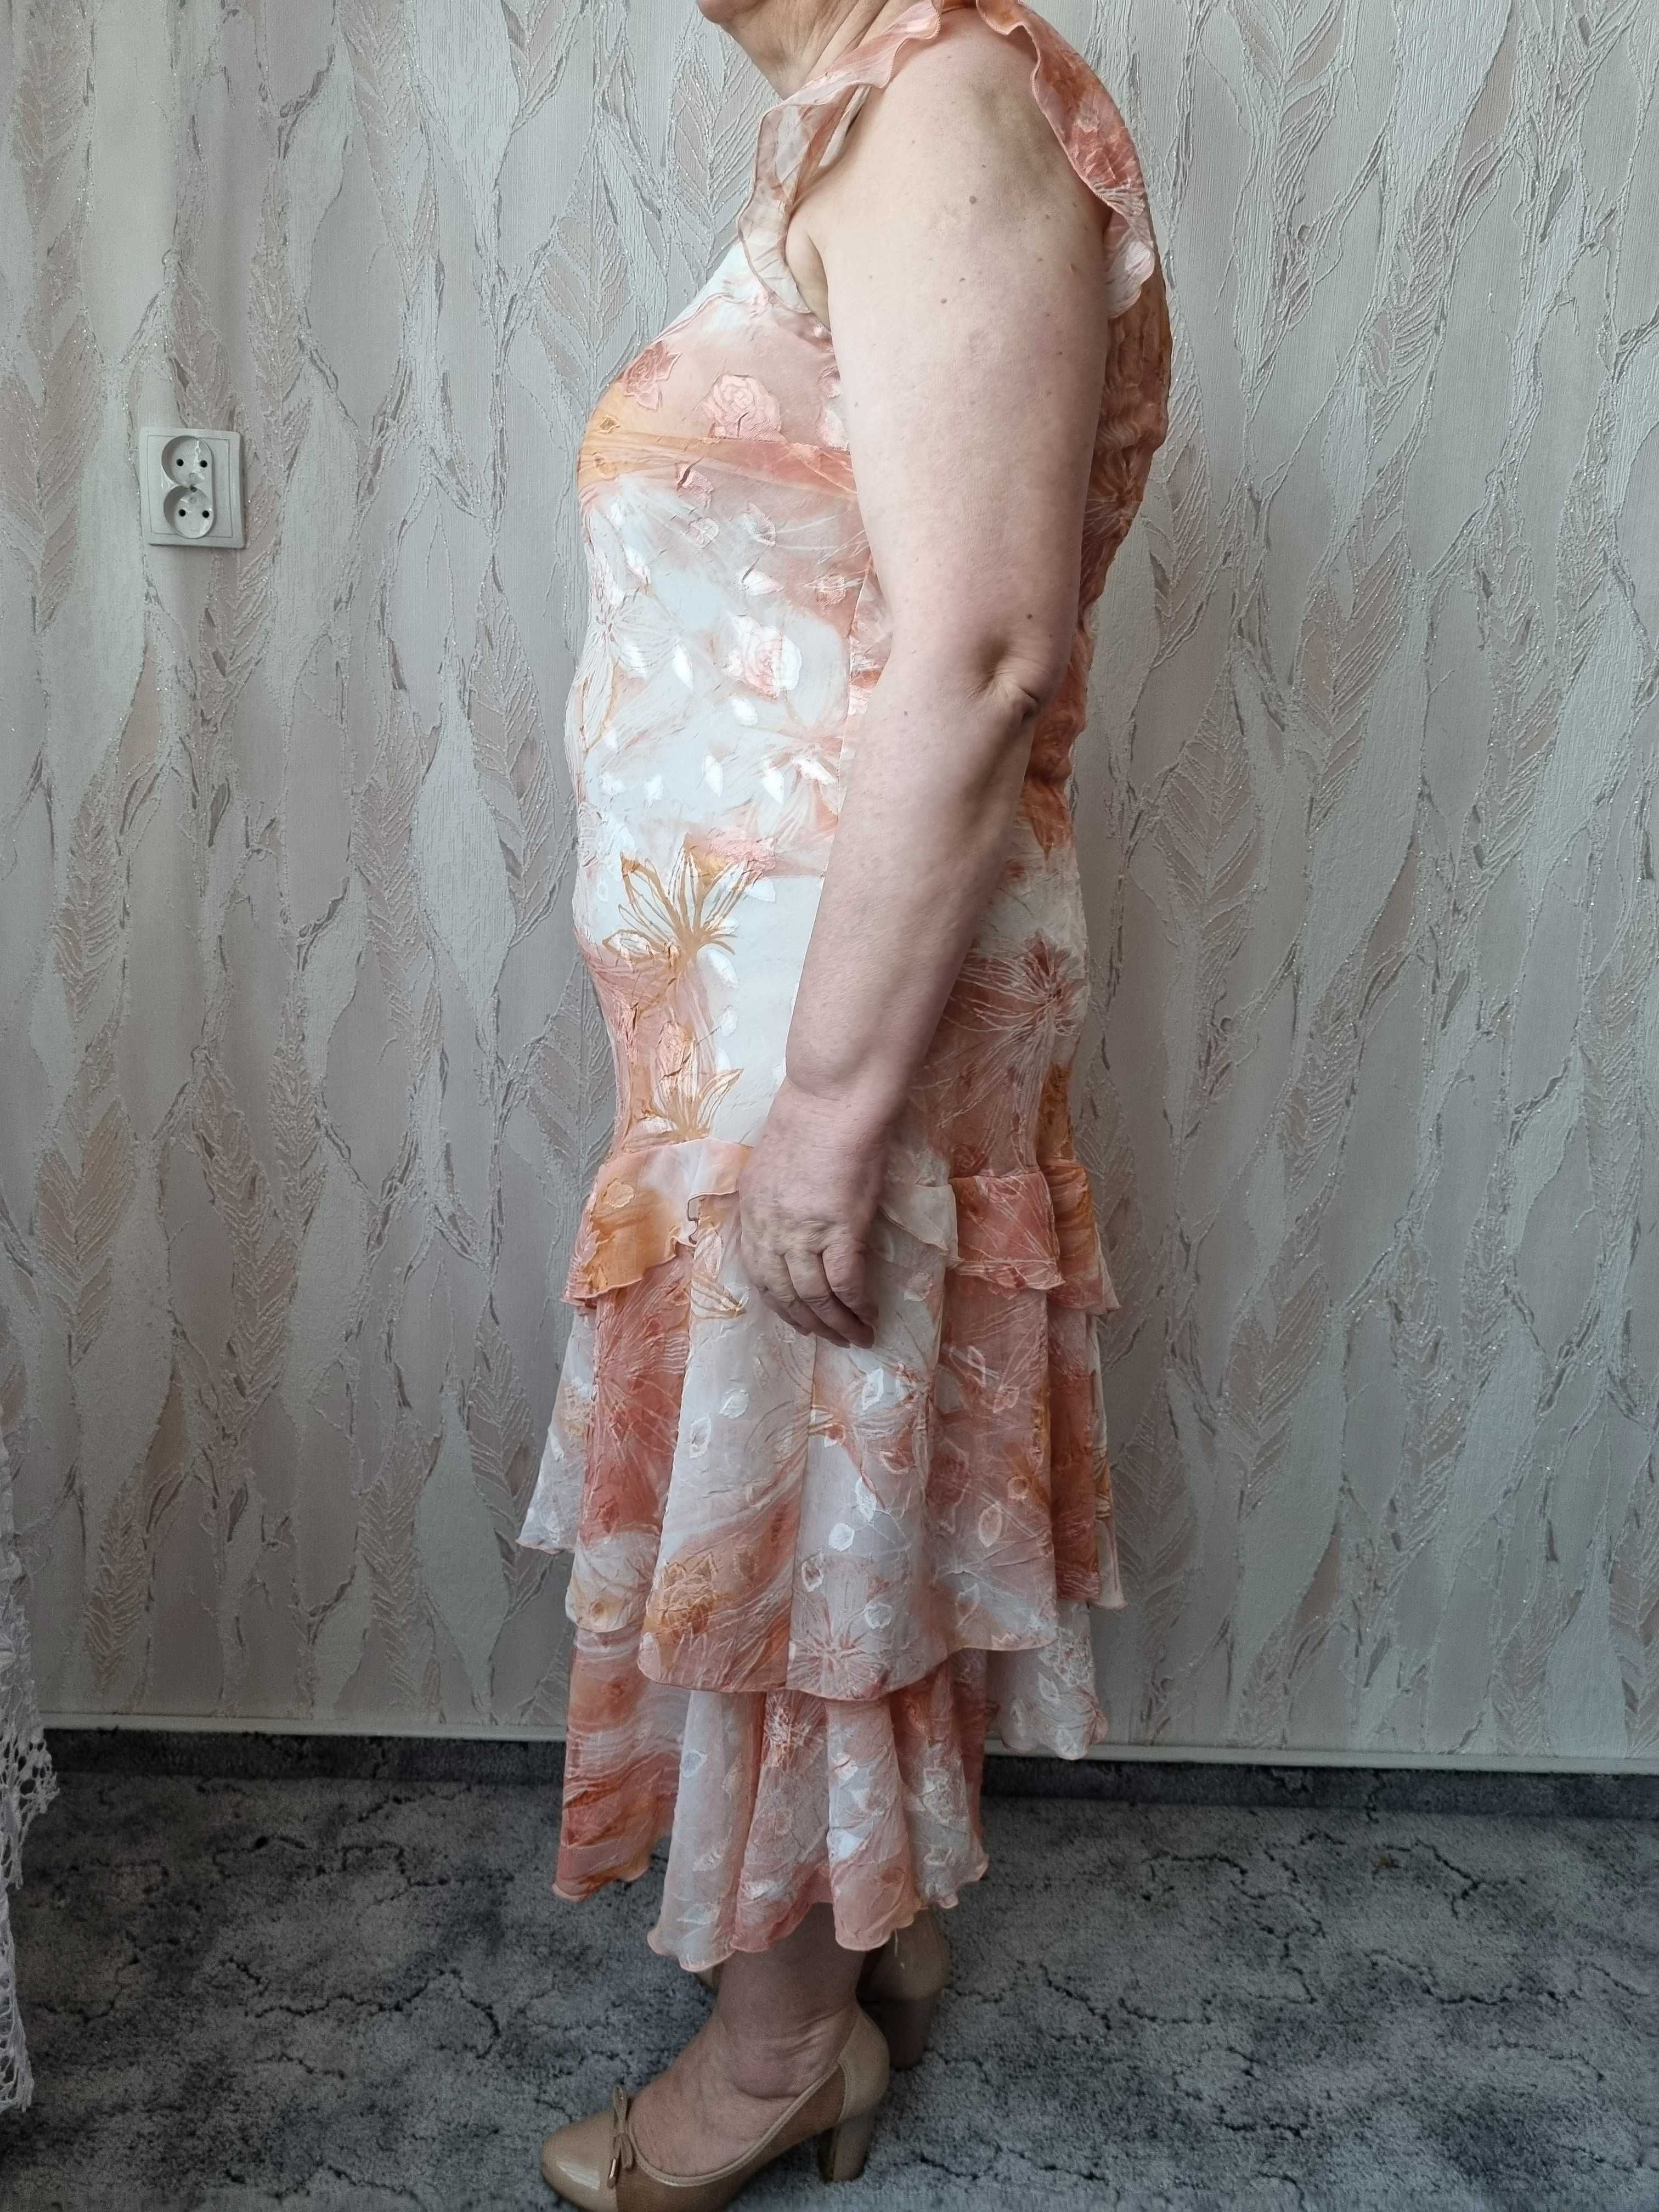 Brzoskwiniowa garsonka na wesele Dana r. 46 sukienka+żakiet